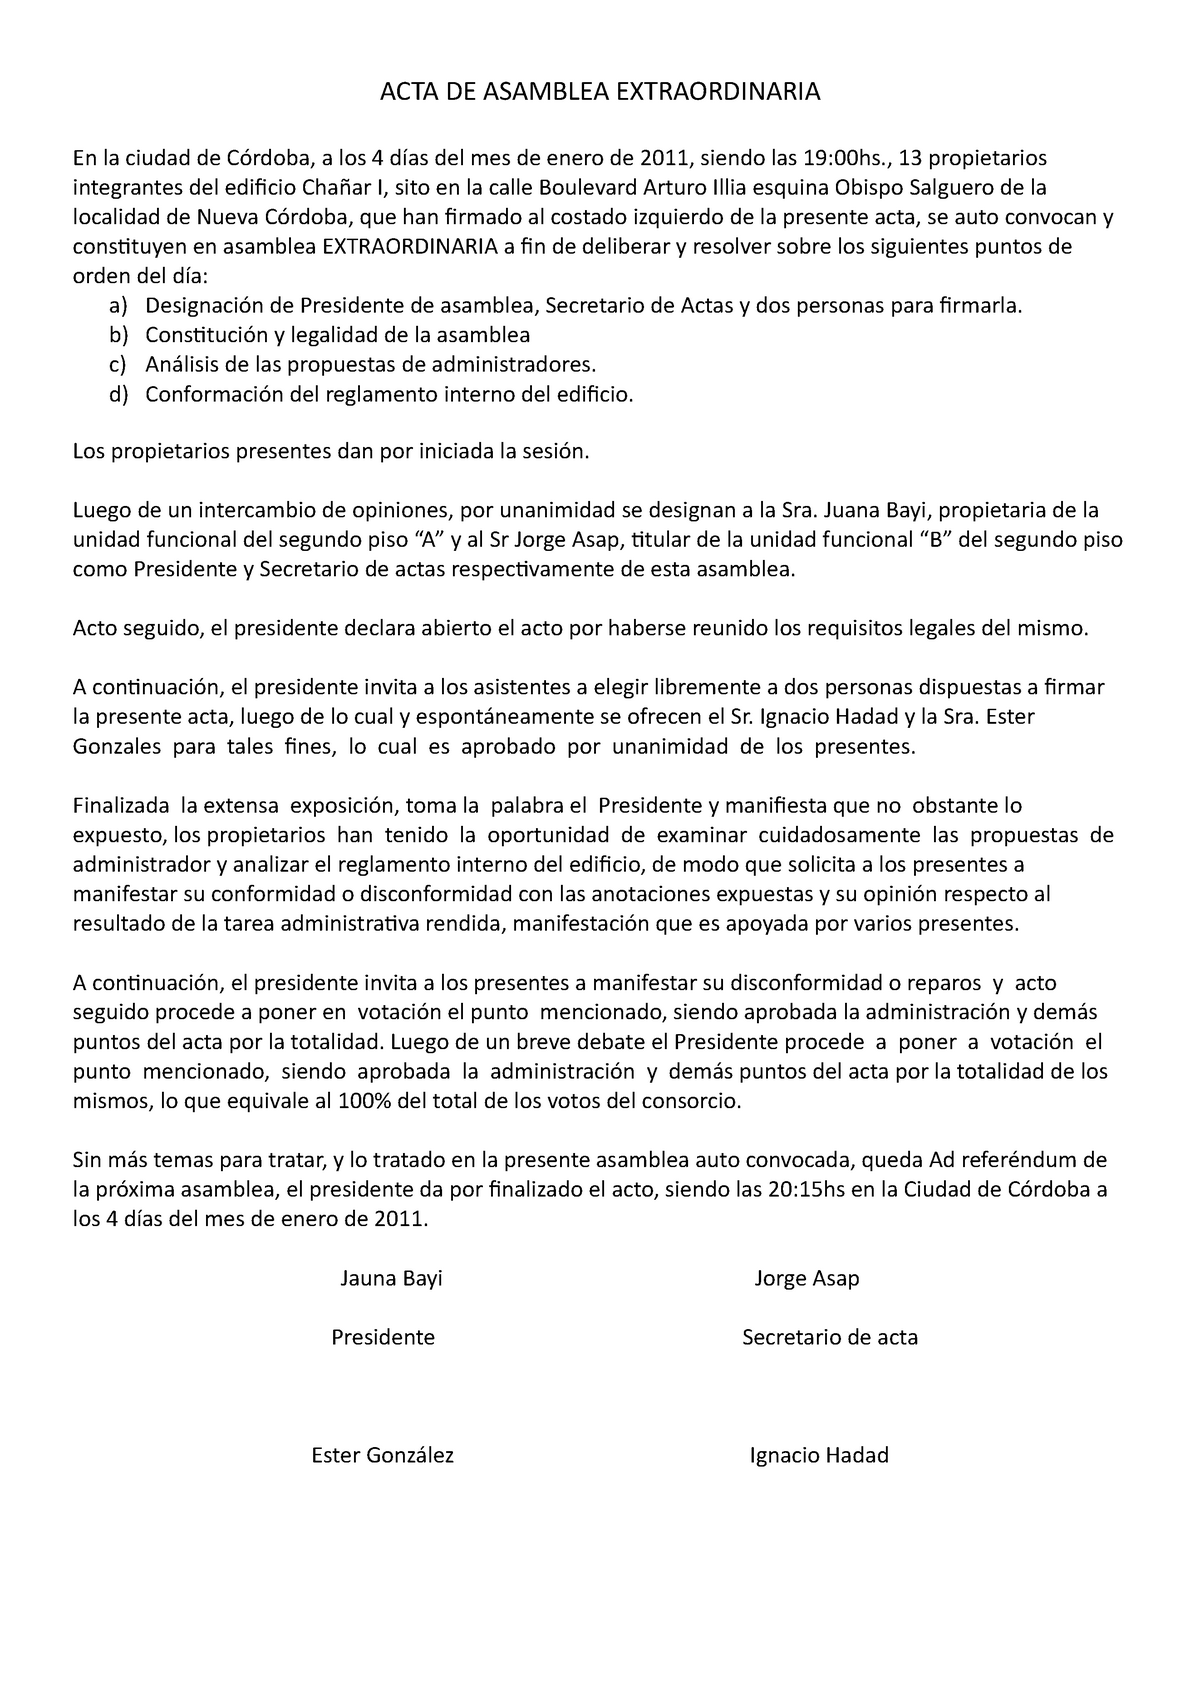 ACTA Asamblea TP1 AÑO 2021 - ACTA DE ASAMBLEA EXTRAORDINARIA En la ciudad  de Córdoba, a los 4 días - Studocu